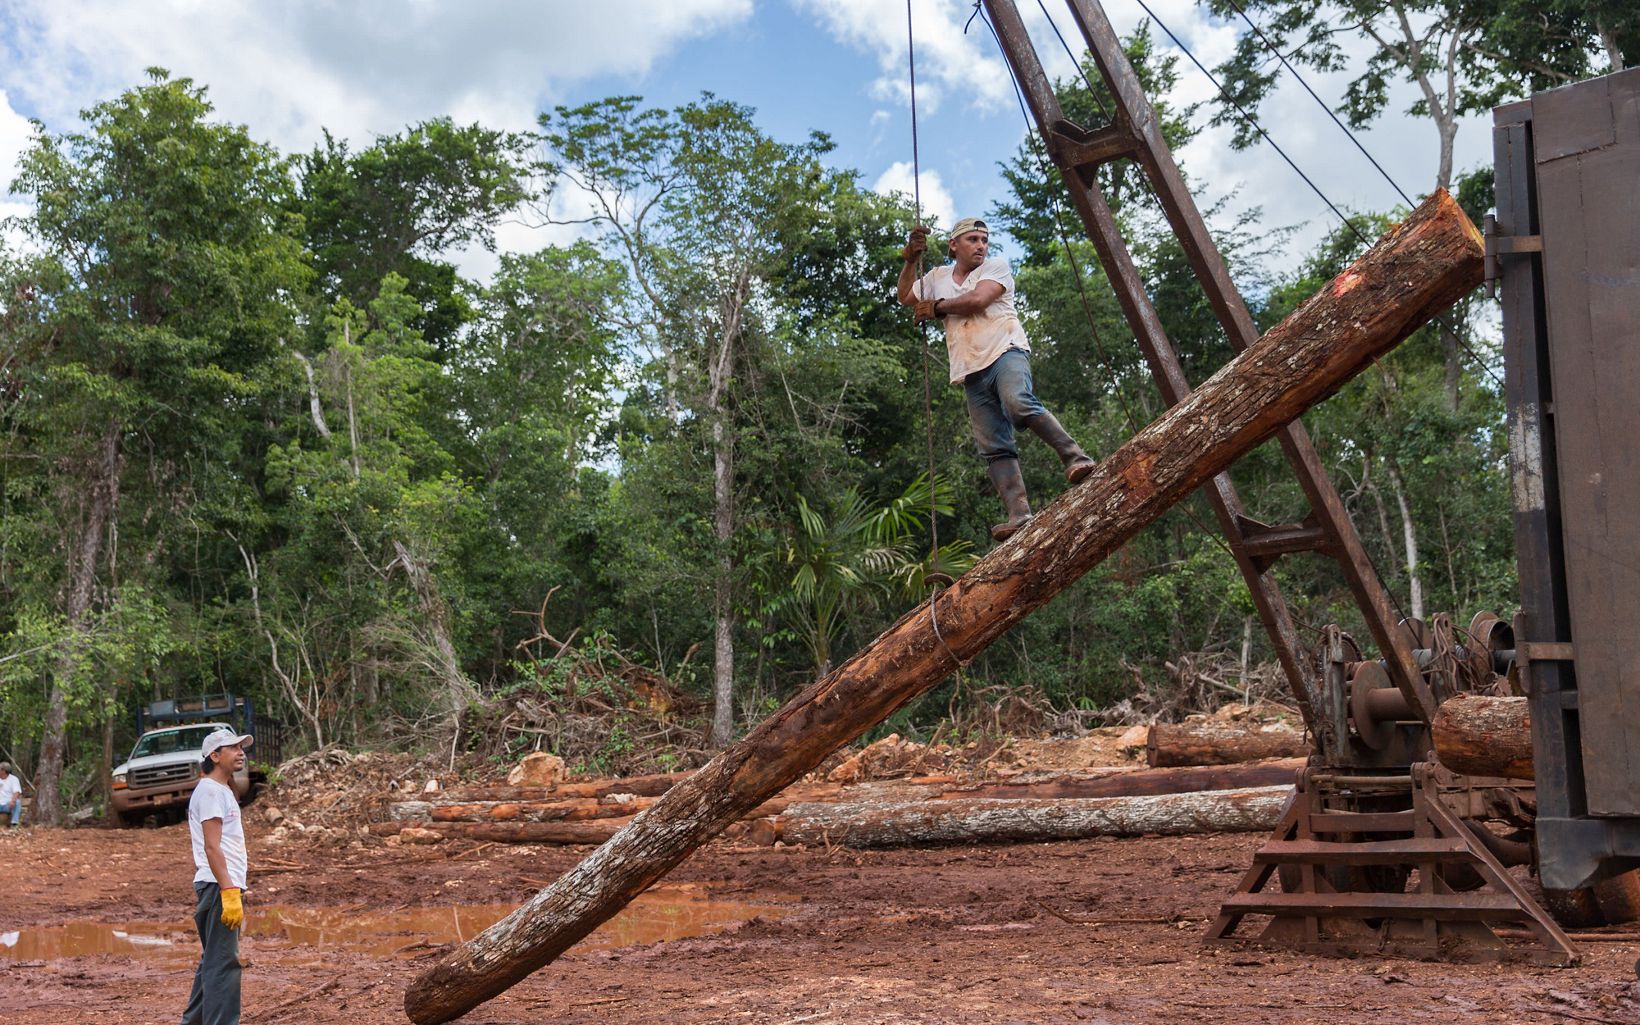 Los bosques designados para el aprovechamiento selectivo  forman una quinta parte de todos los bosques tropicales, y la demanda de madera está aumentando. Se requiere un mejor manejo forestal. © Erich Schlegel